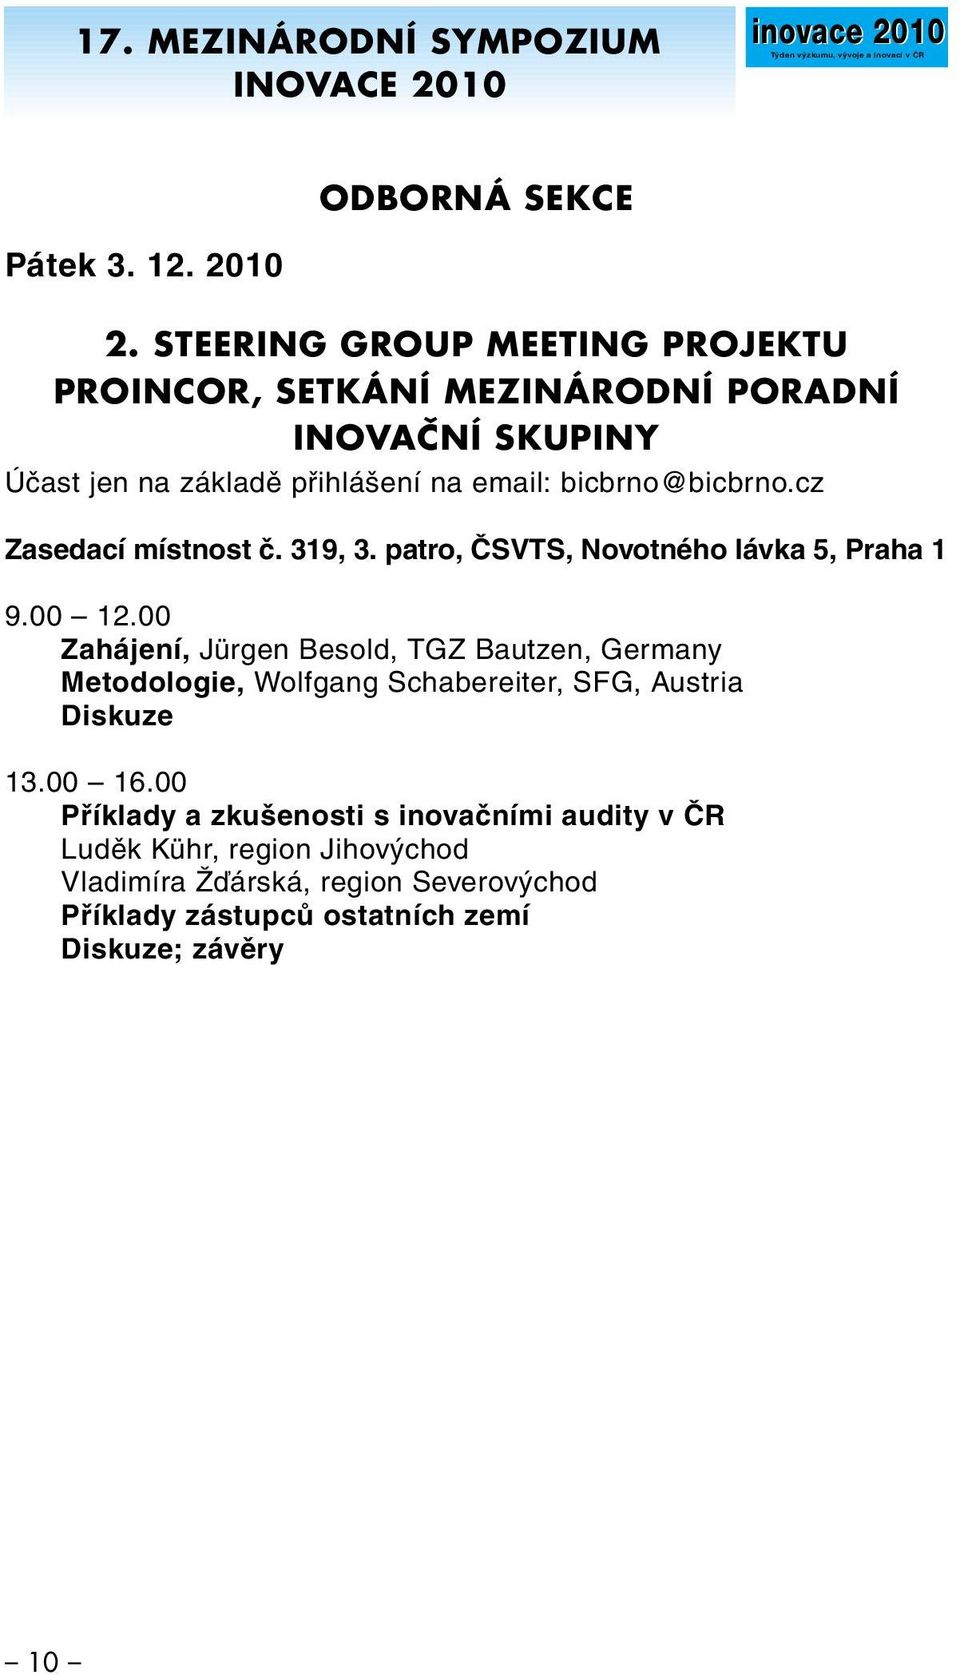 cz Zasedací místnost č. 319, 3. patro, ČSVTS, Novotného lávka 5, Praha 1 9.00 12.